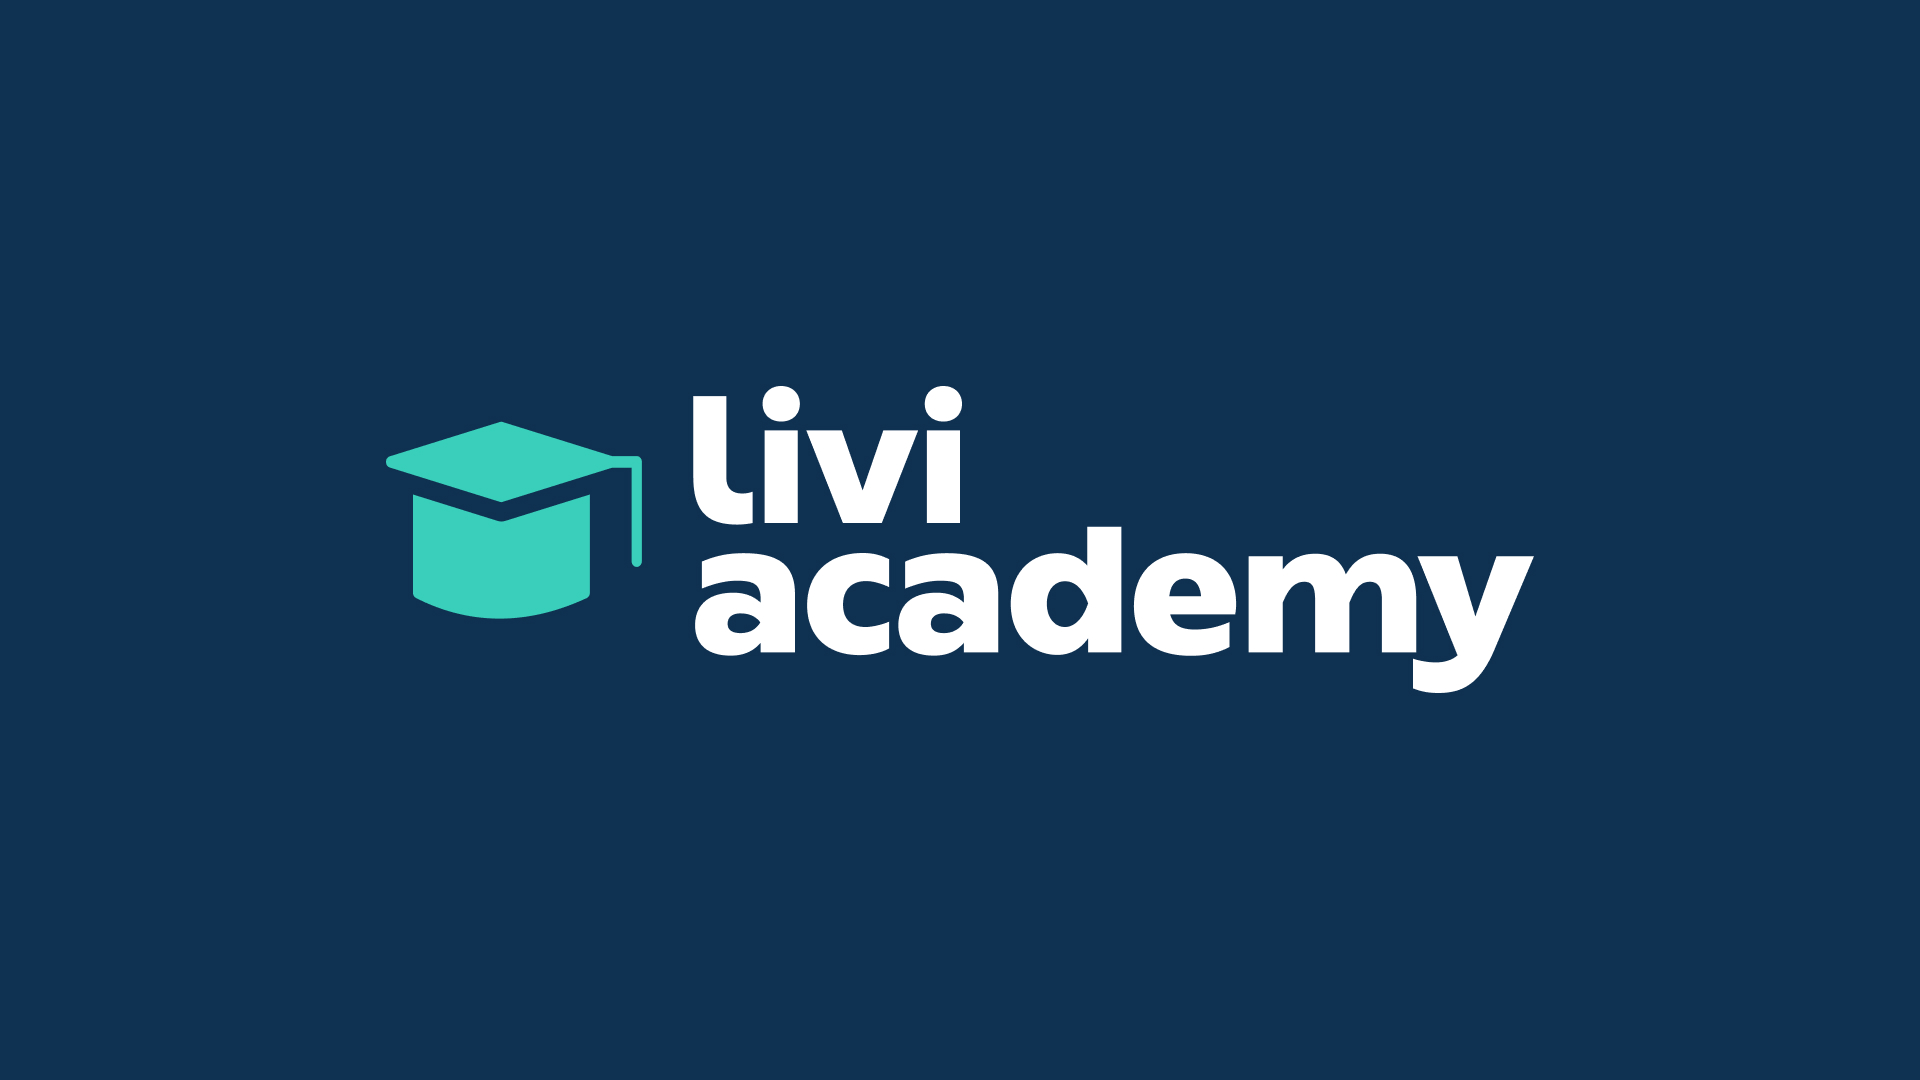 Livi lance la “Livi Academy” pour améliorer la pratique médicale en téléconsultation
